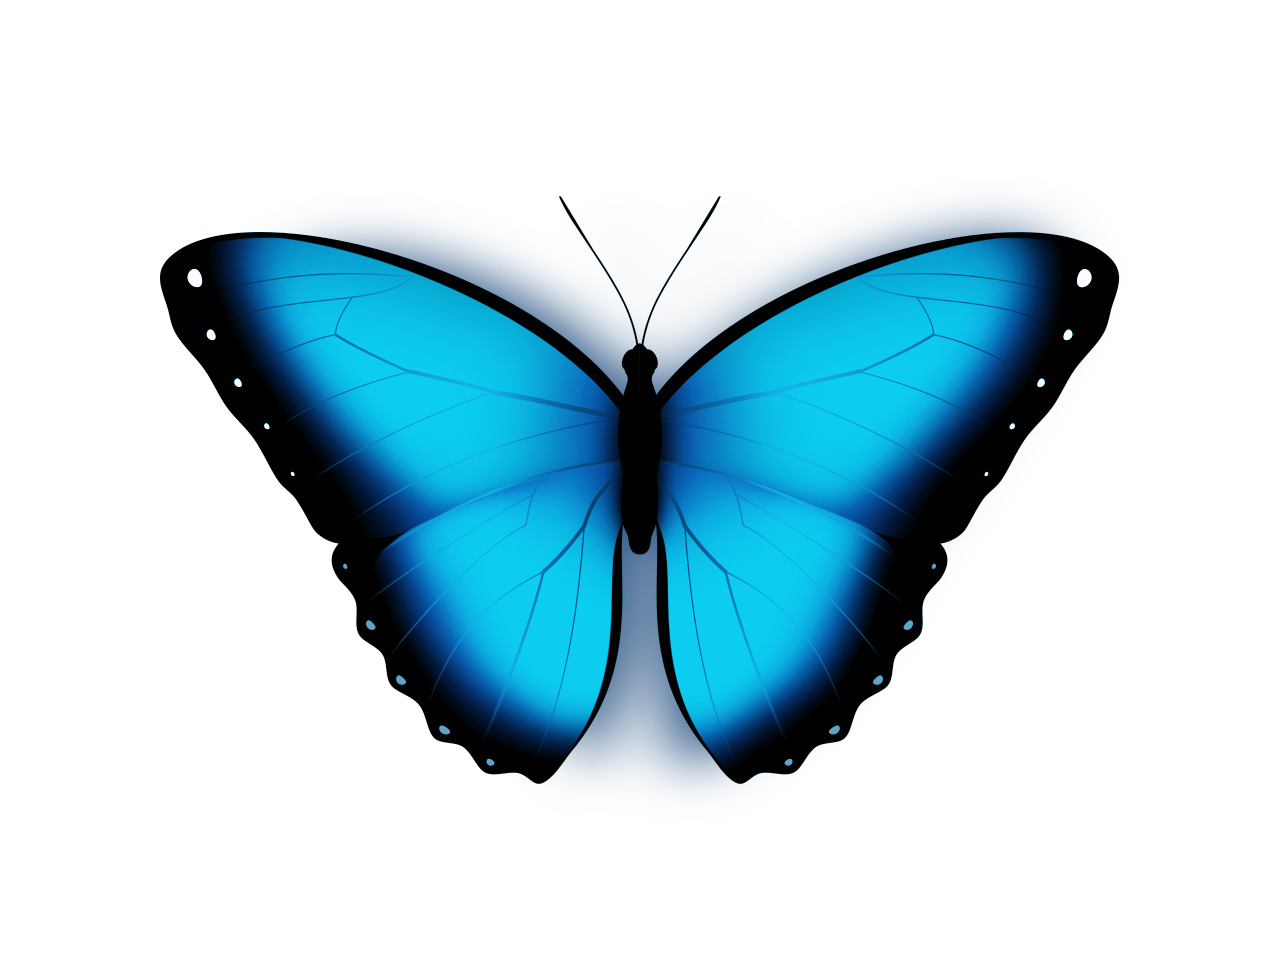 Синие бабочки на белом фоне